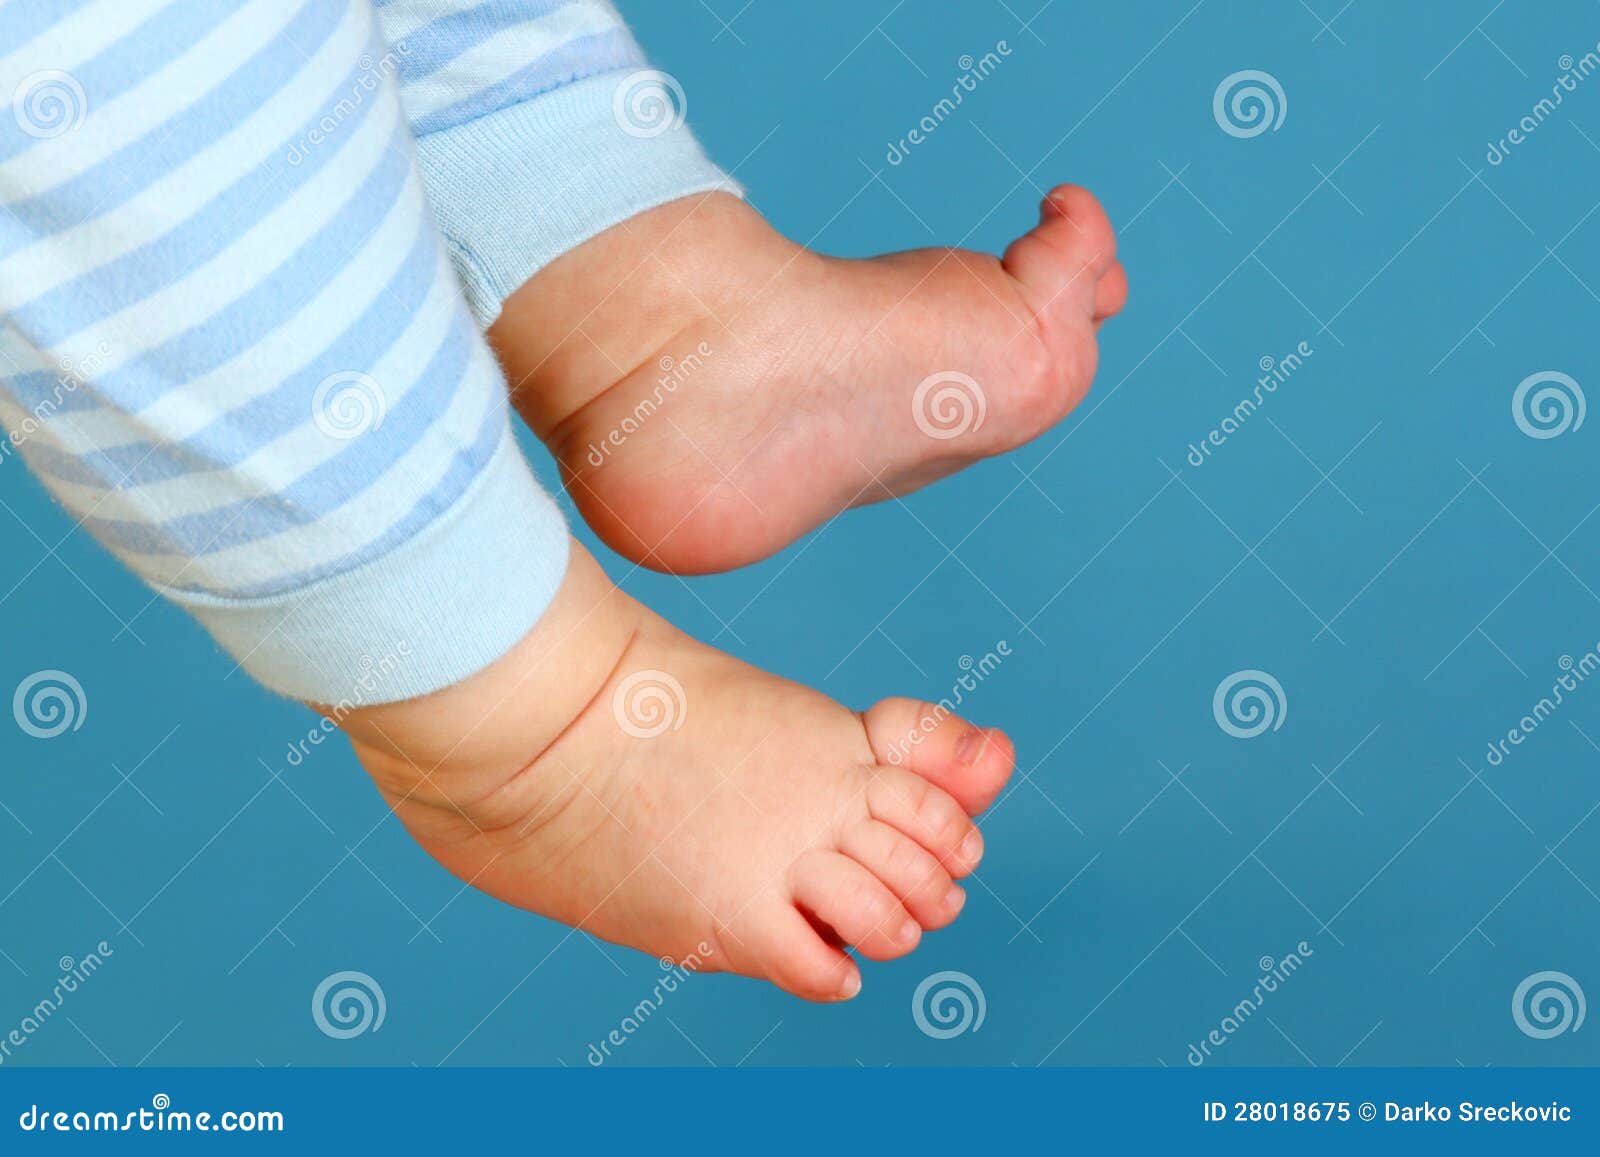 Рука нога когда у ребенка. Пальчики у новорожденных на ногах. Пальцы на ногах у новорожденного.